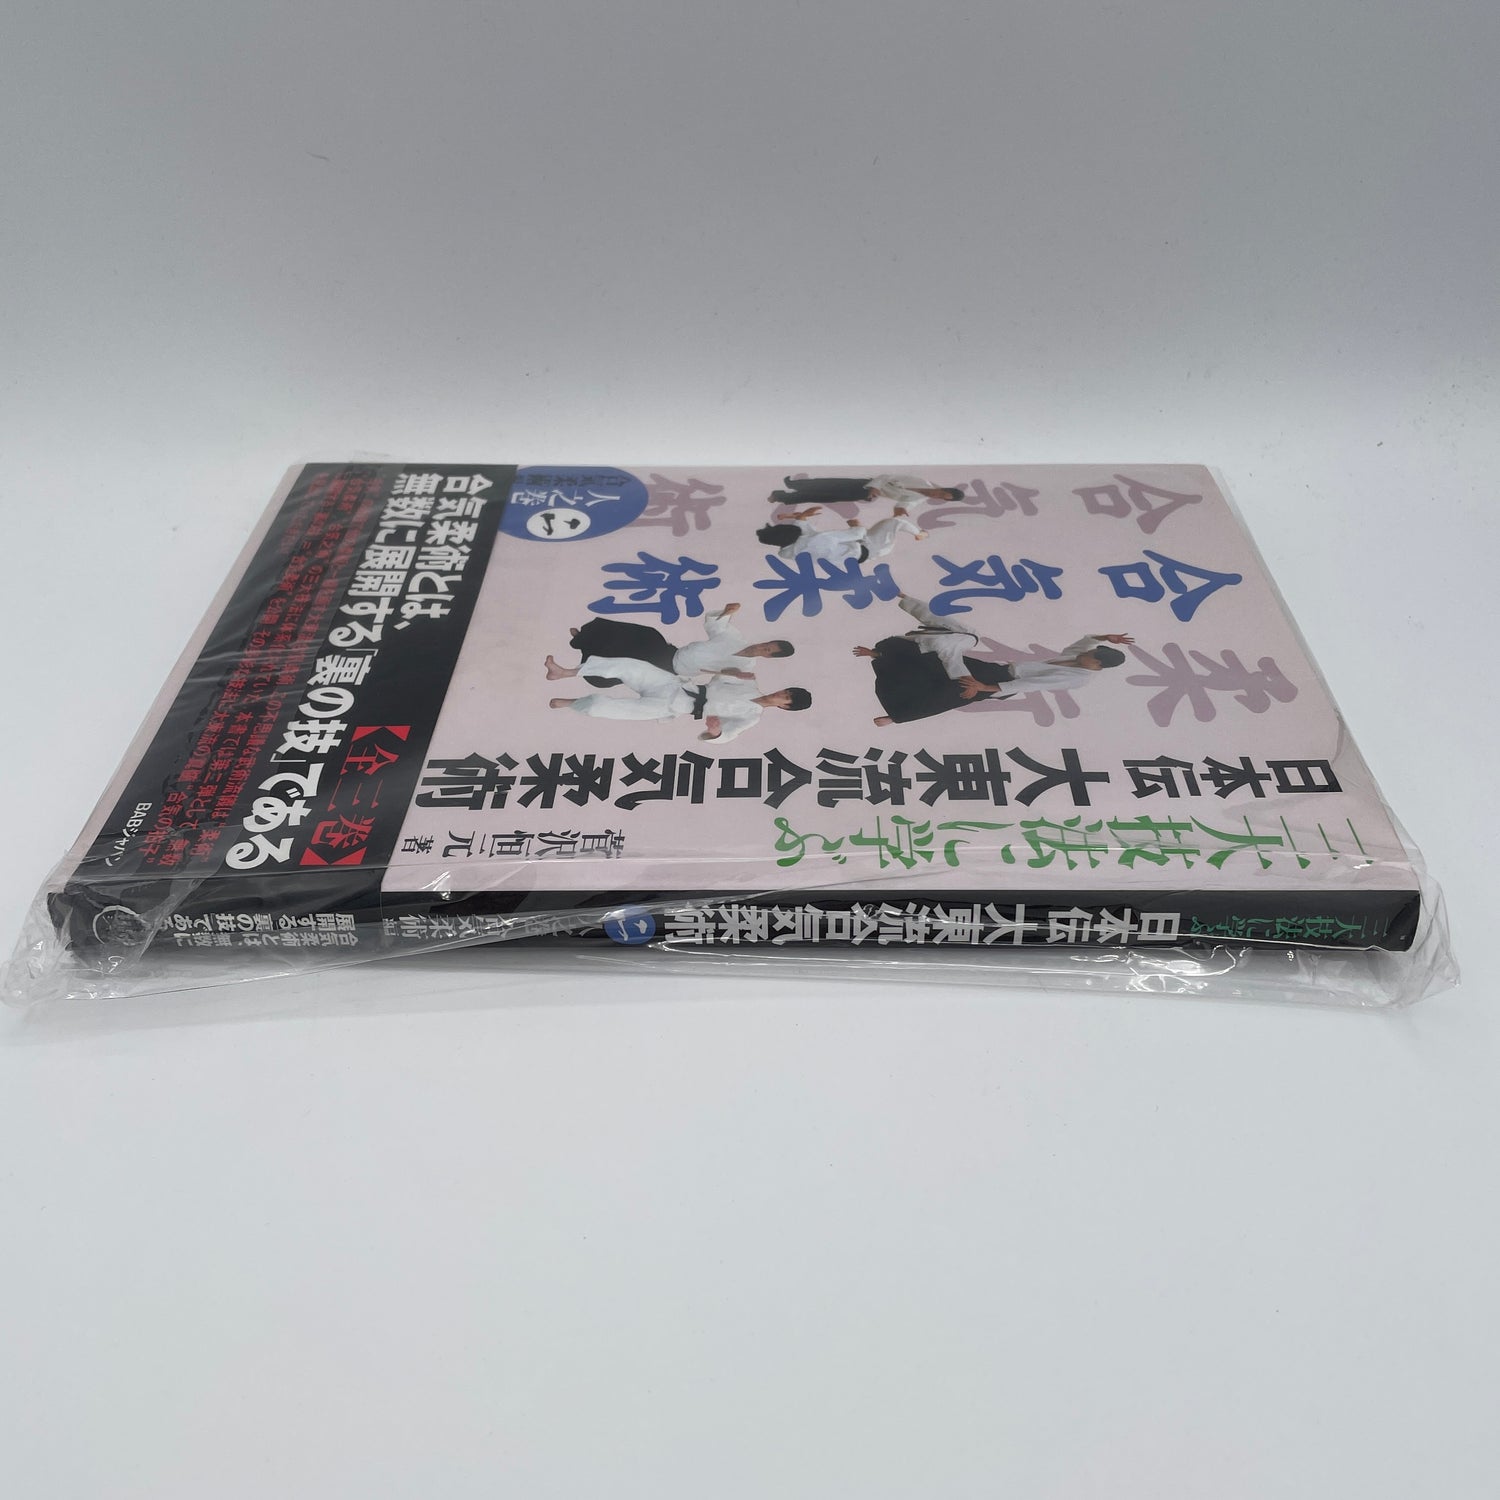 Nihonden Daito Ryu Aikijujutsu Libro 2: Aikijujutsu de Kogen Sugasawa (usado) 